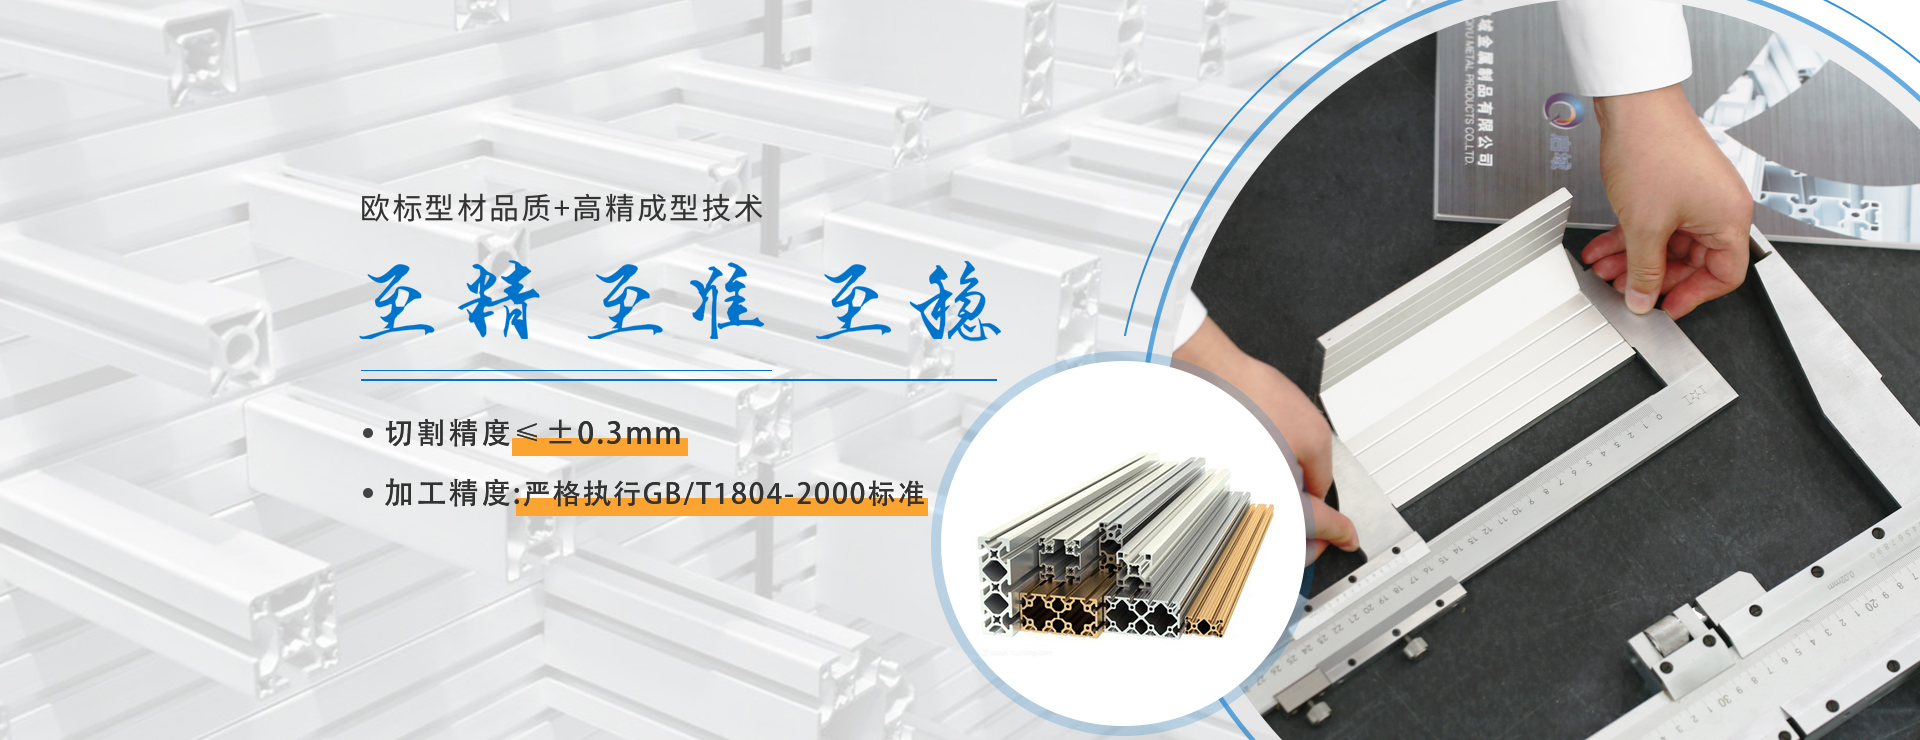 歐標(biao)鋁型材(cai)品質切割精度可達0.3mm